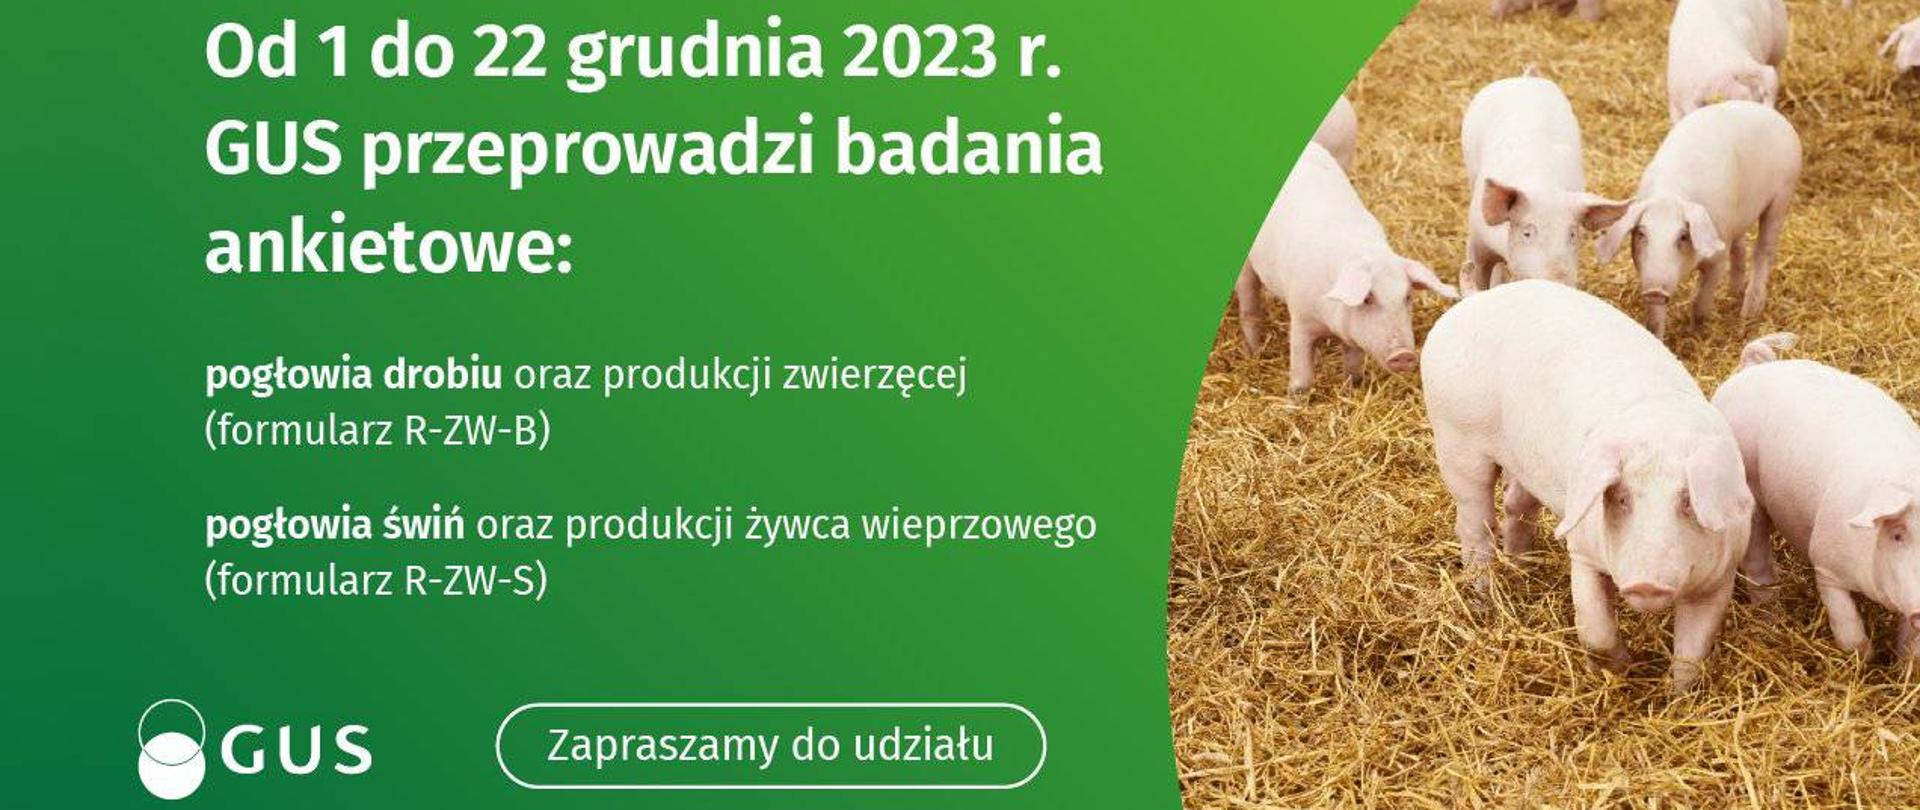 Tekst od 1 do 22 grudnia 2023 r. GUS przeprowadzi badania ankietowe: pogłowia drobiu oraz produkcji zwierzęcej (formularz R-ZW-B), pogłowia świń oraz produkcji żywca wieprzowego (formularz R-ZW-S) Zapraszamy do udziału. Obok zdjęcie grupy 8 świń chodzących po wysypanym sianie.